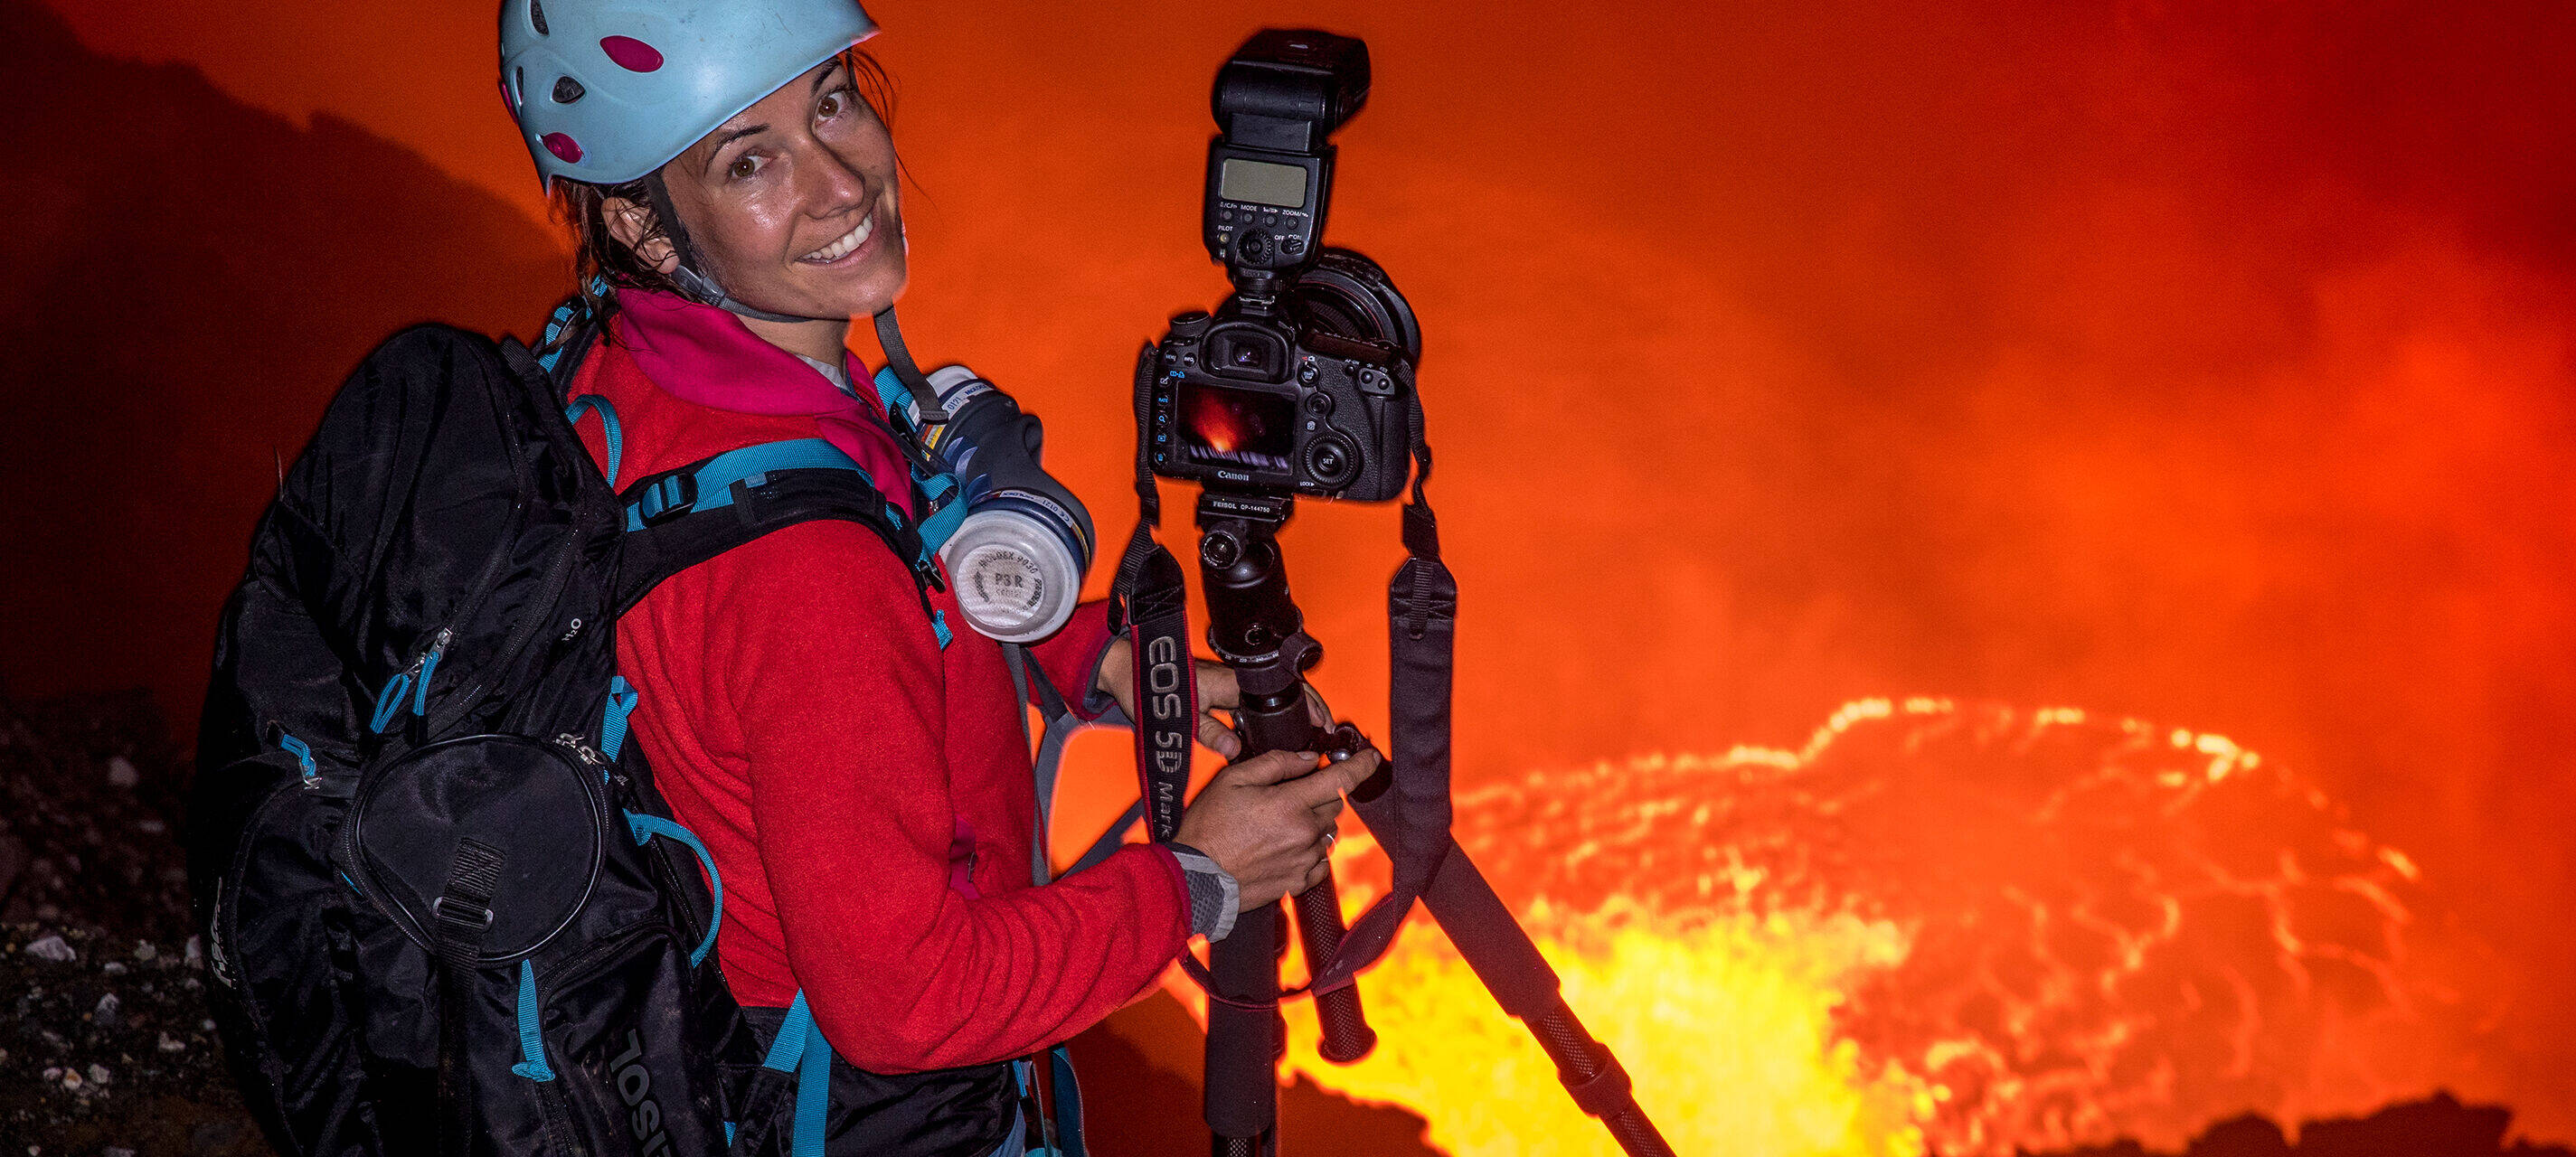 Expeditionsfotografin Ulla Lohmann steht mit Helm und Rucksack am Rande eines Vulkans und lächelt die Betrachtenden an. Neben ihr steht eine Kamera mit Stativ.